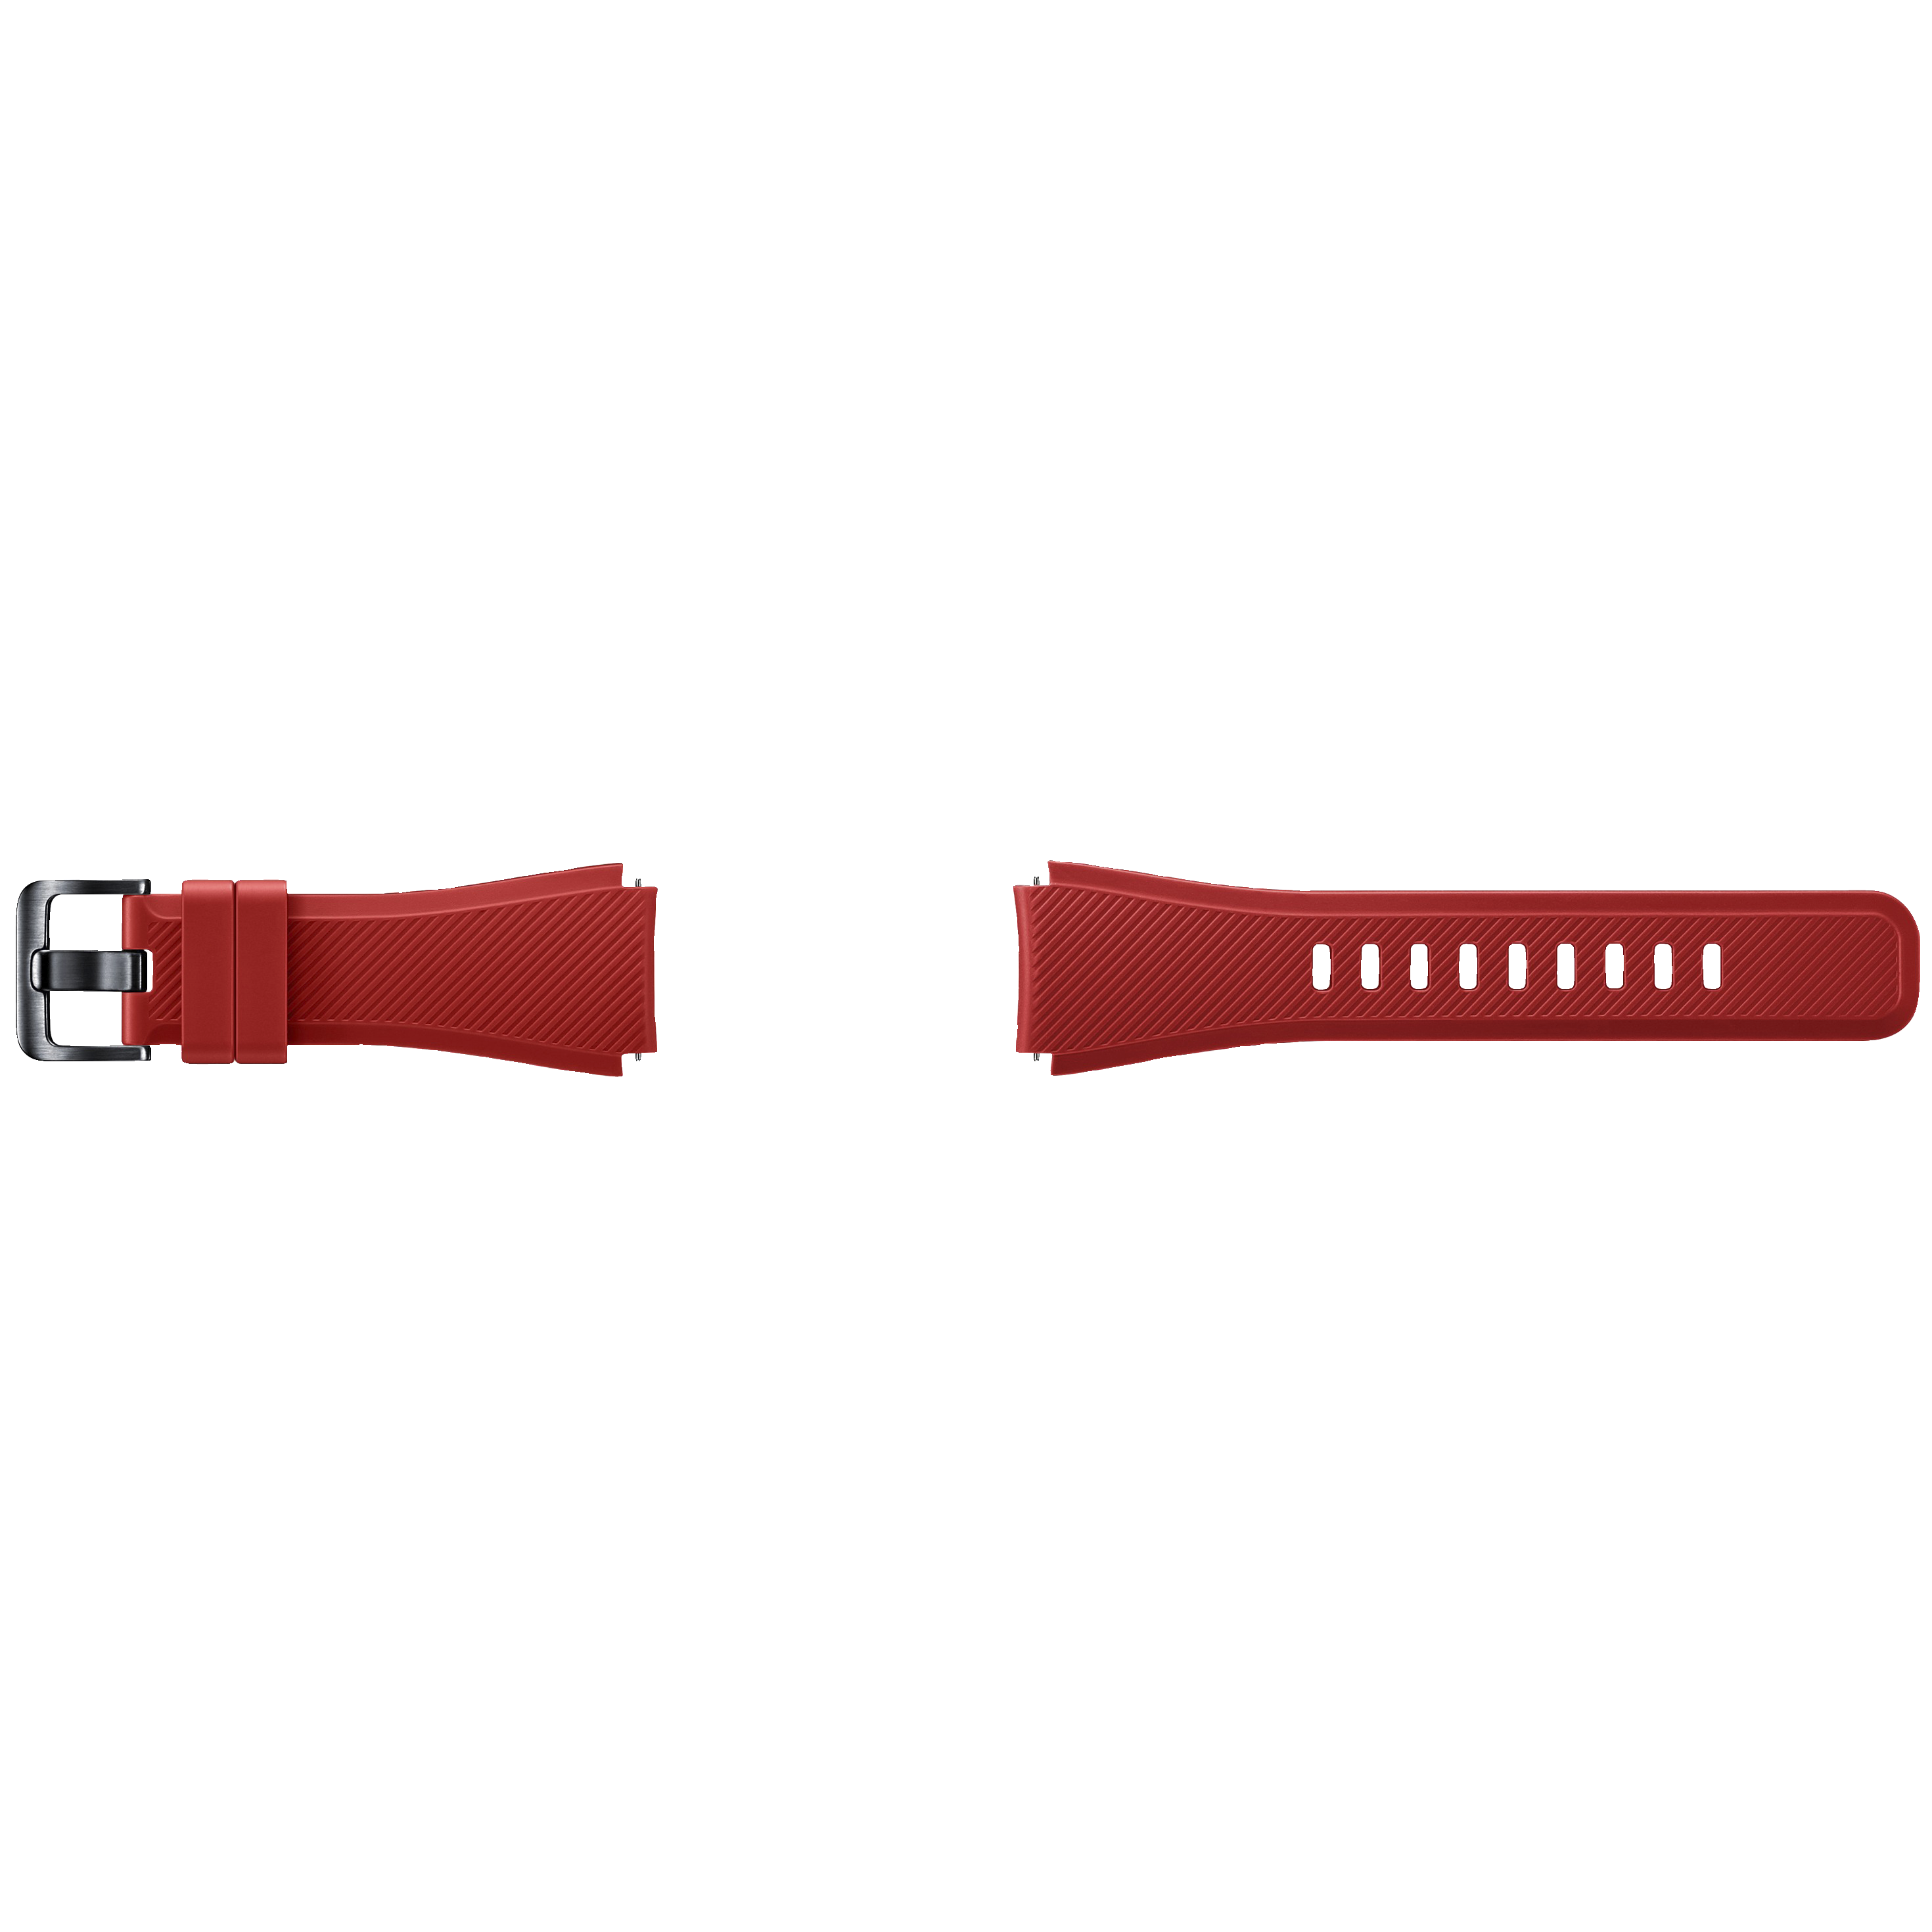 Samsung Gear S3 Active silikonerem - rød - Tilbehør ure og wearables -  Elgiganten